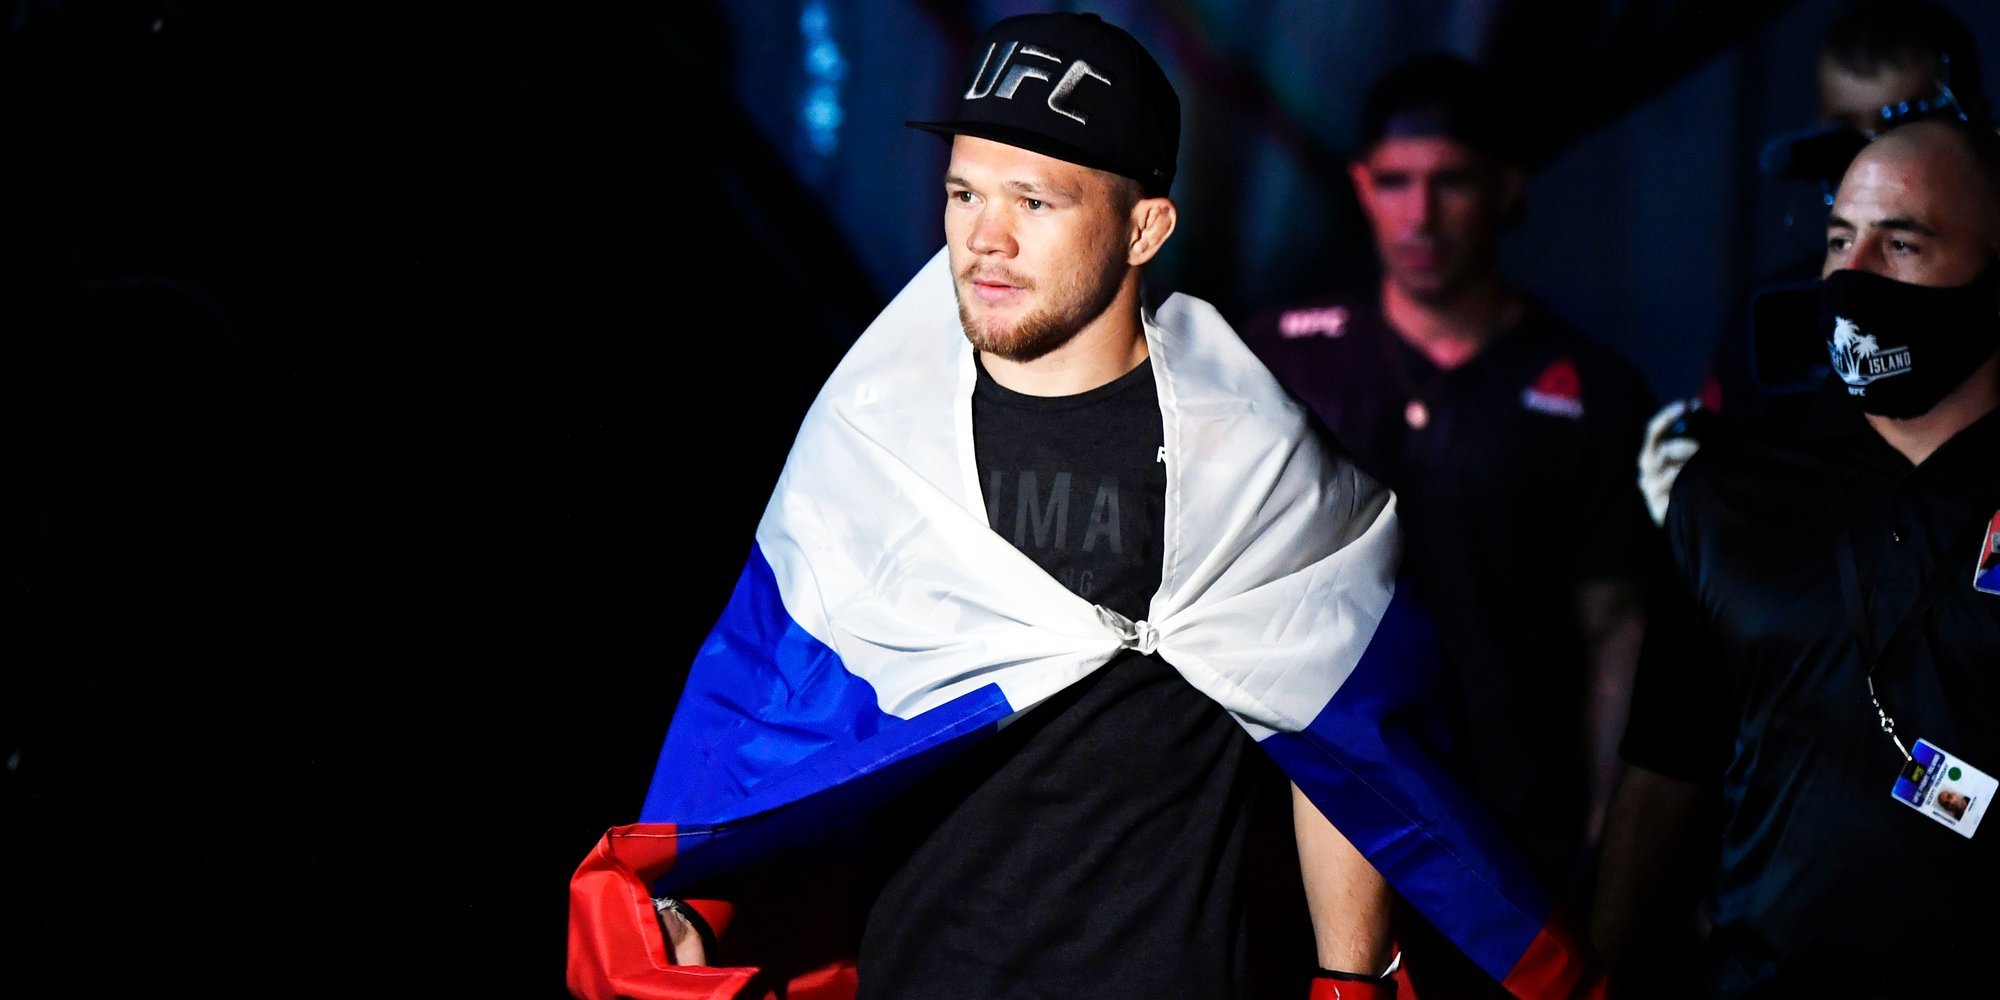 Петр Ян 5 марта в Лас-Вегасе проведет реванш со Стерлингом. Россиянин подписал новый контракт с UFC на шесть боев